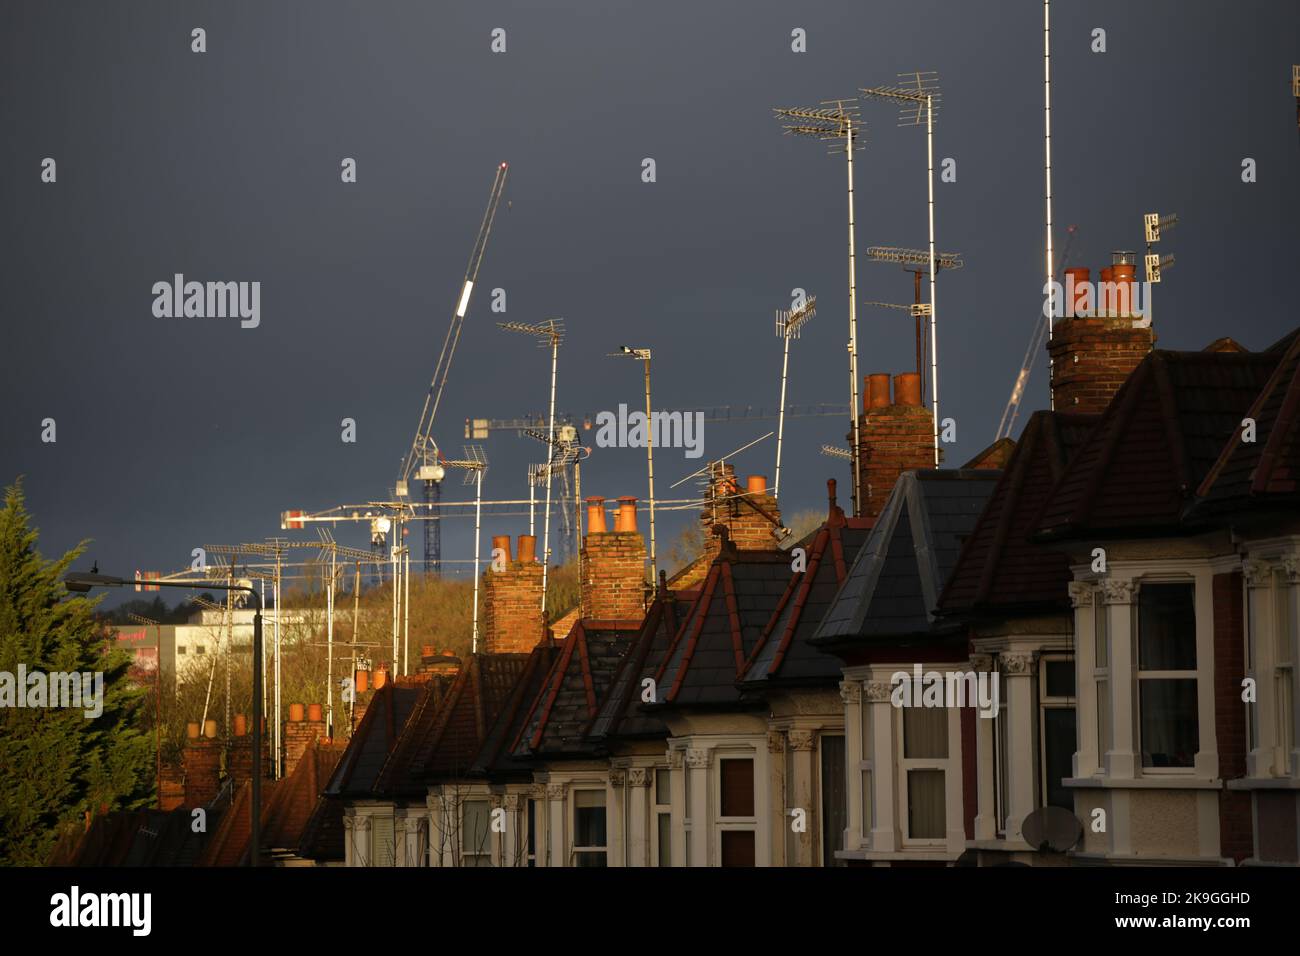 Una scena urbana di TV ariels, tetti, camini e case terrazzate contro un grigio scuro tempestoso e minaccioso cielo.luce intensa aggiunge al dramma Foto Stock